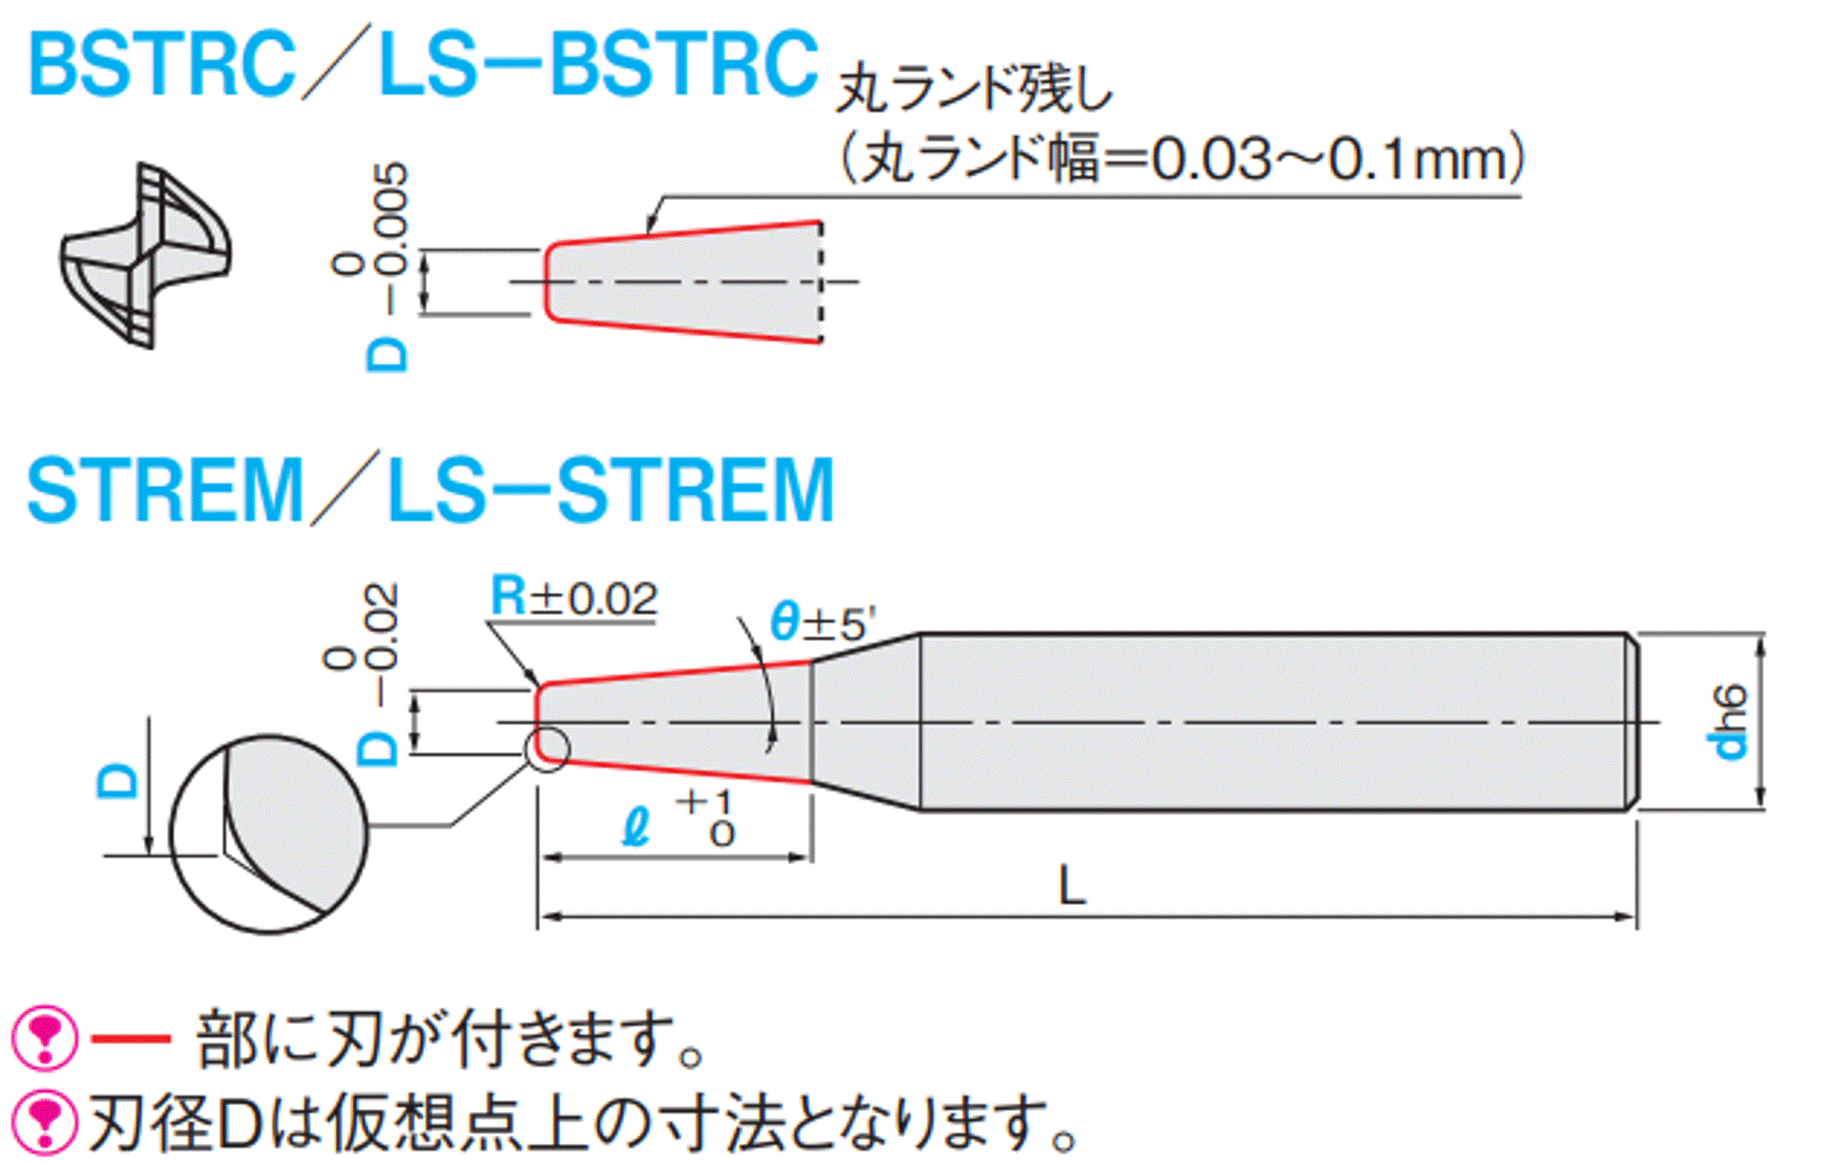 京セラ:京セラ ラジアスエンドミル 4MFR 刃径16mm 刃長35mm 全長110mm シャンク径16mm 4MFR160-350-R10 型式:4MFR160-350-R10 - 4